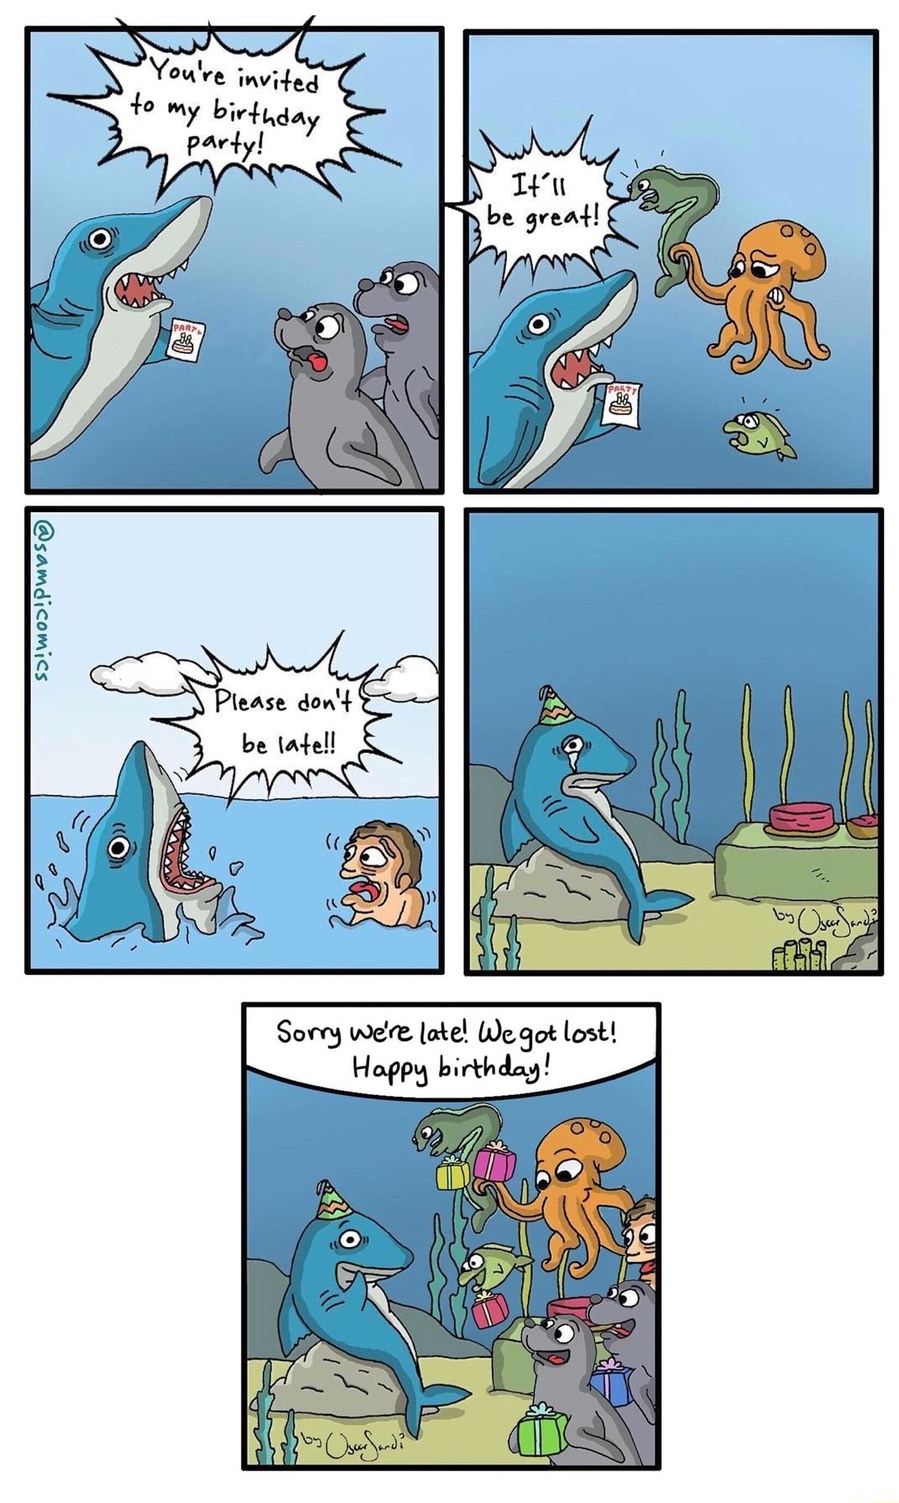 human breathing underwater on the last panel - meme